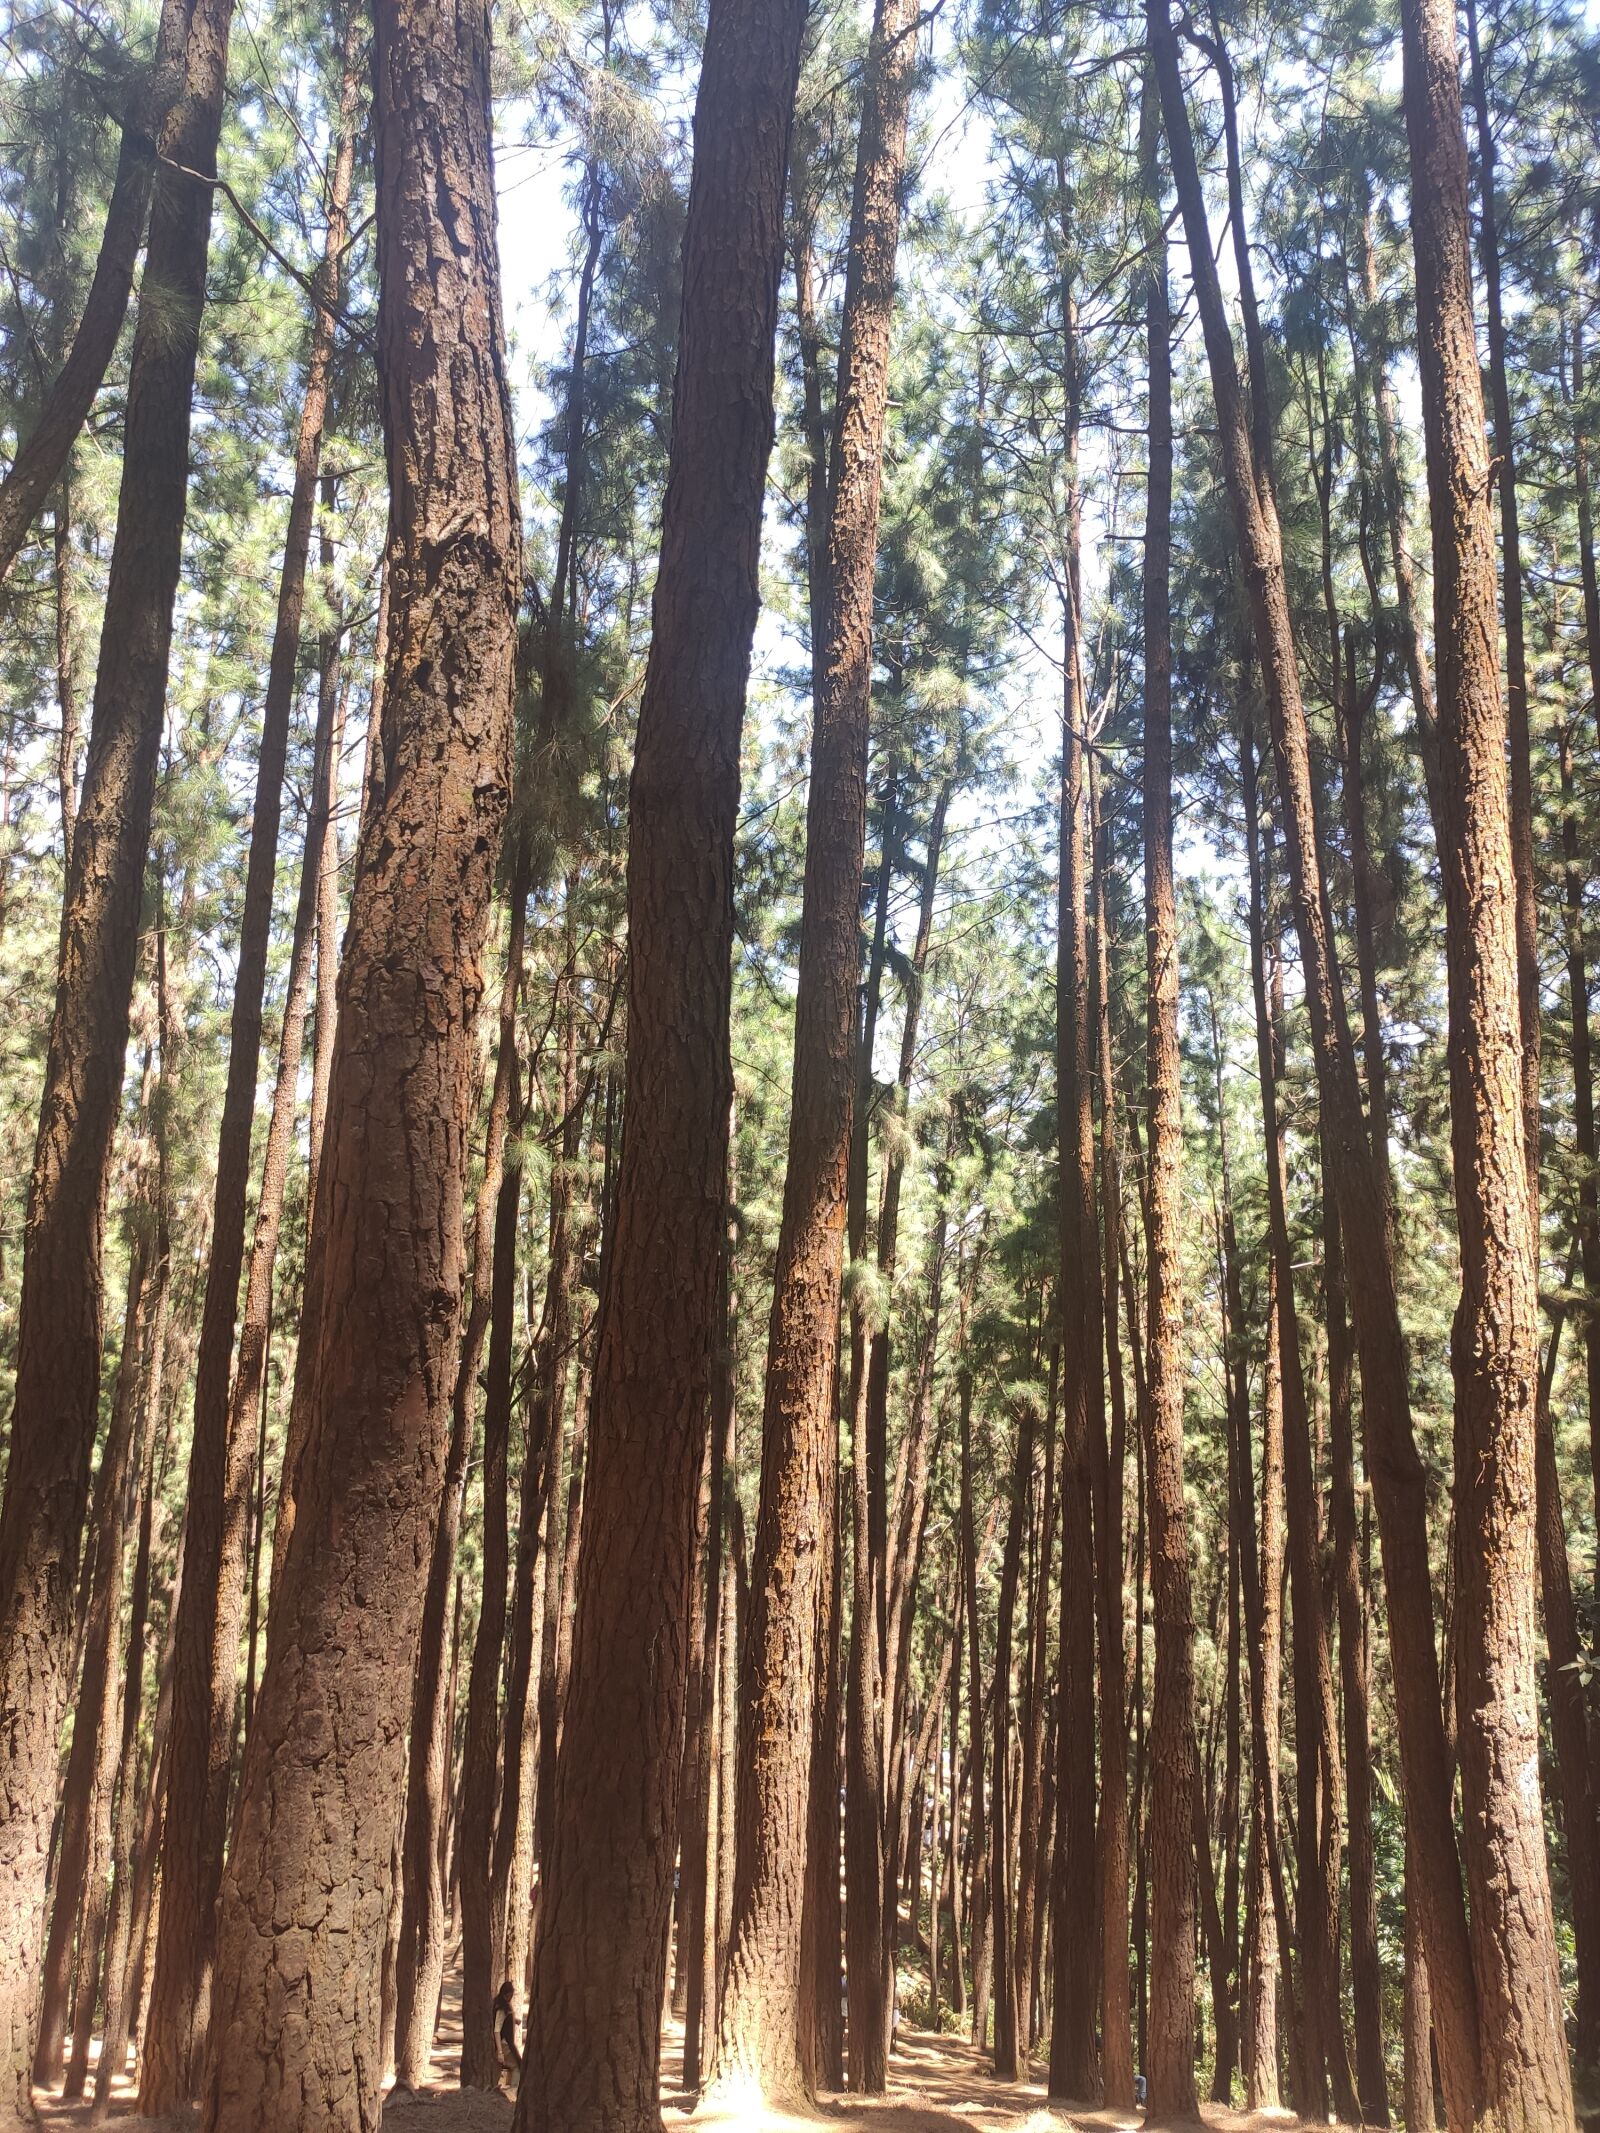 Xiaomi Redmi K20 sample photo. Pine trees, vagamon, india photography